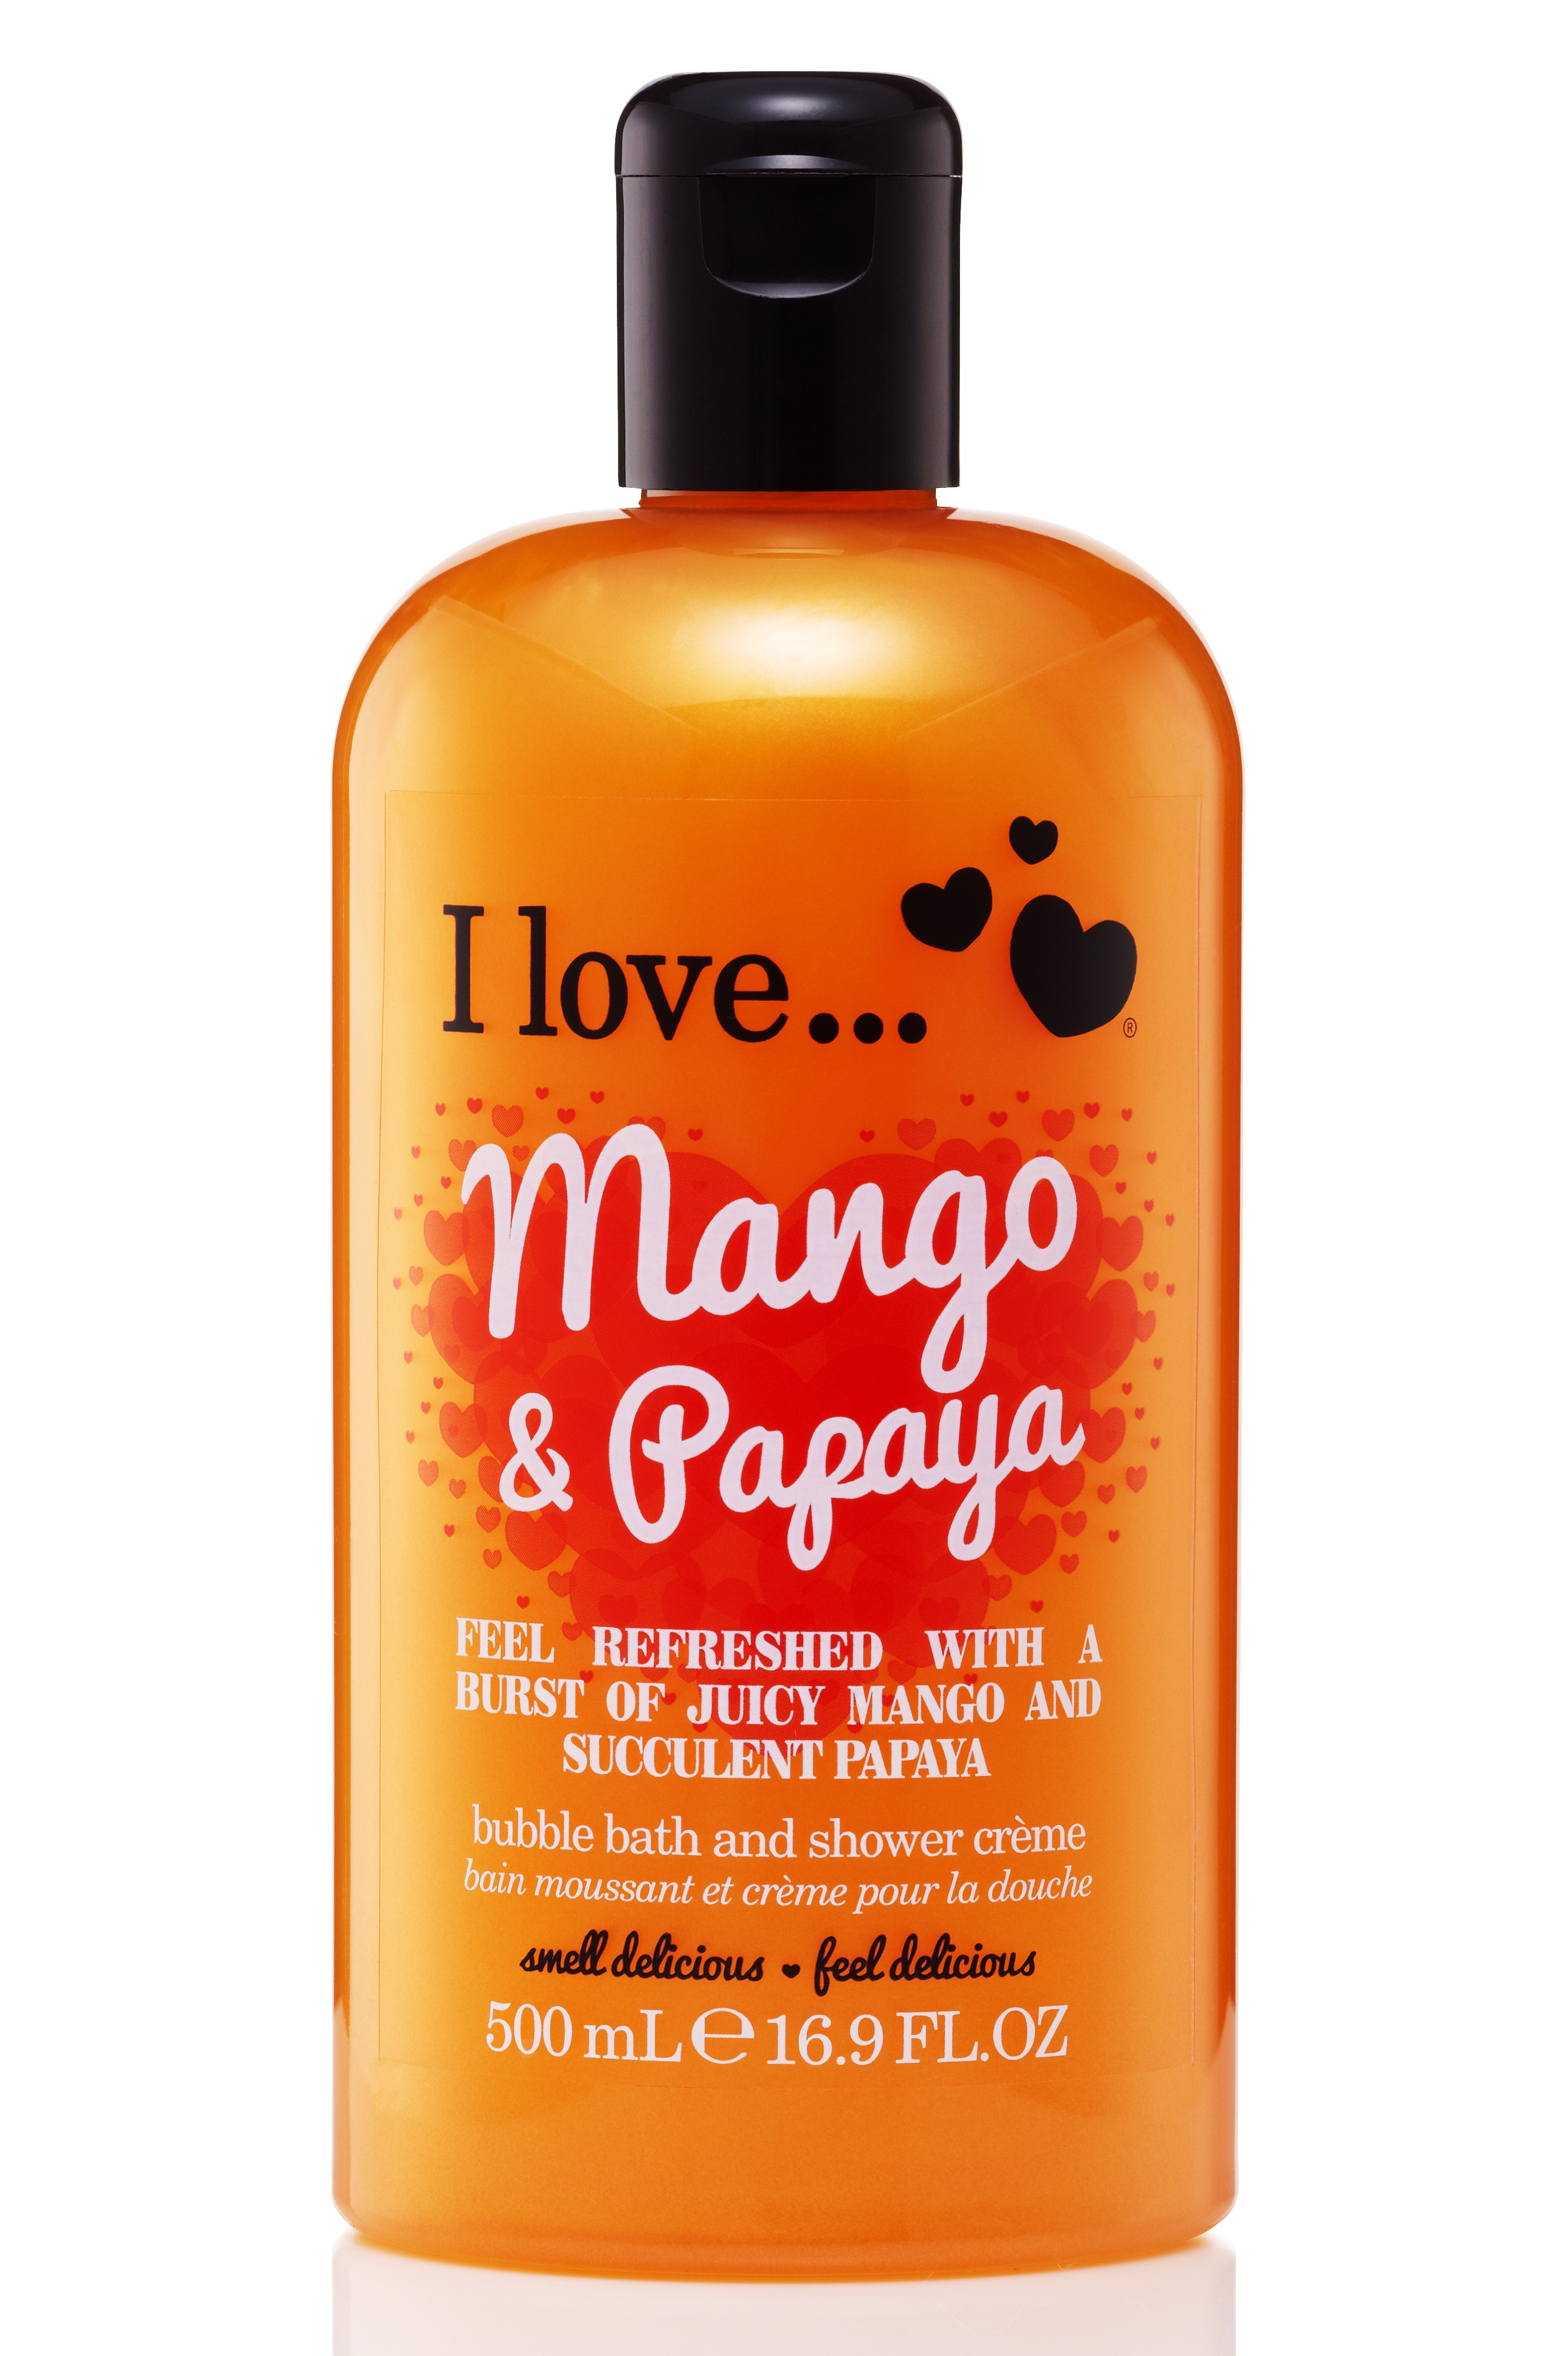 I Love Originals Bath & Shower Crème Mango & Papaya 500 ml